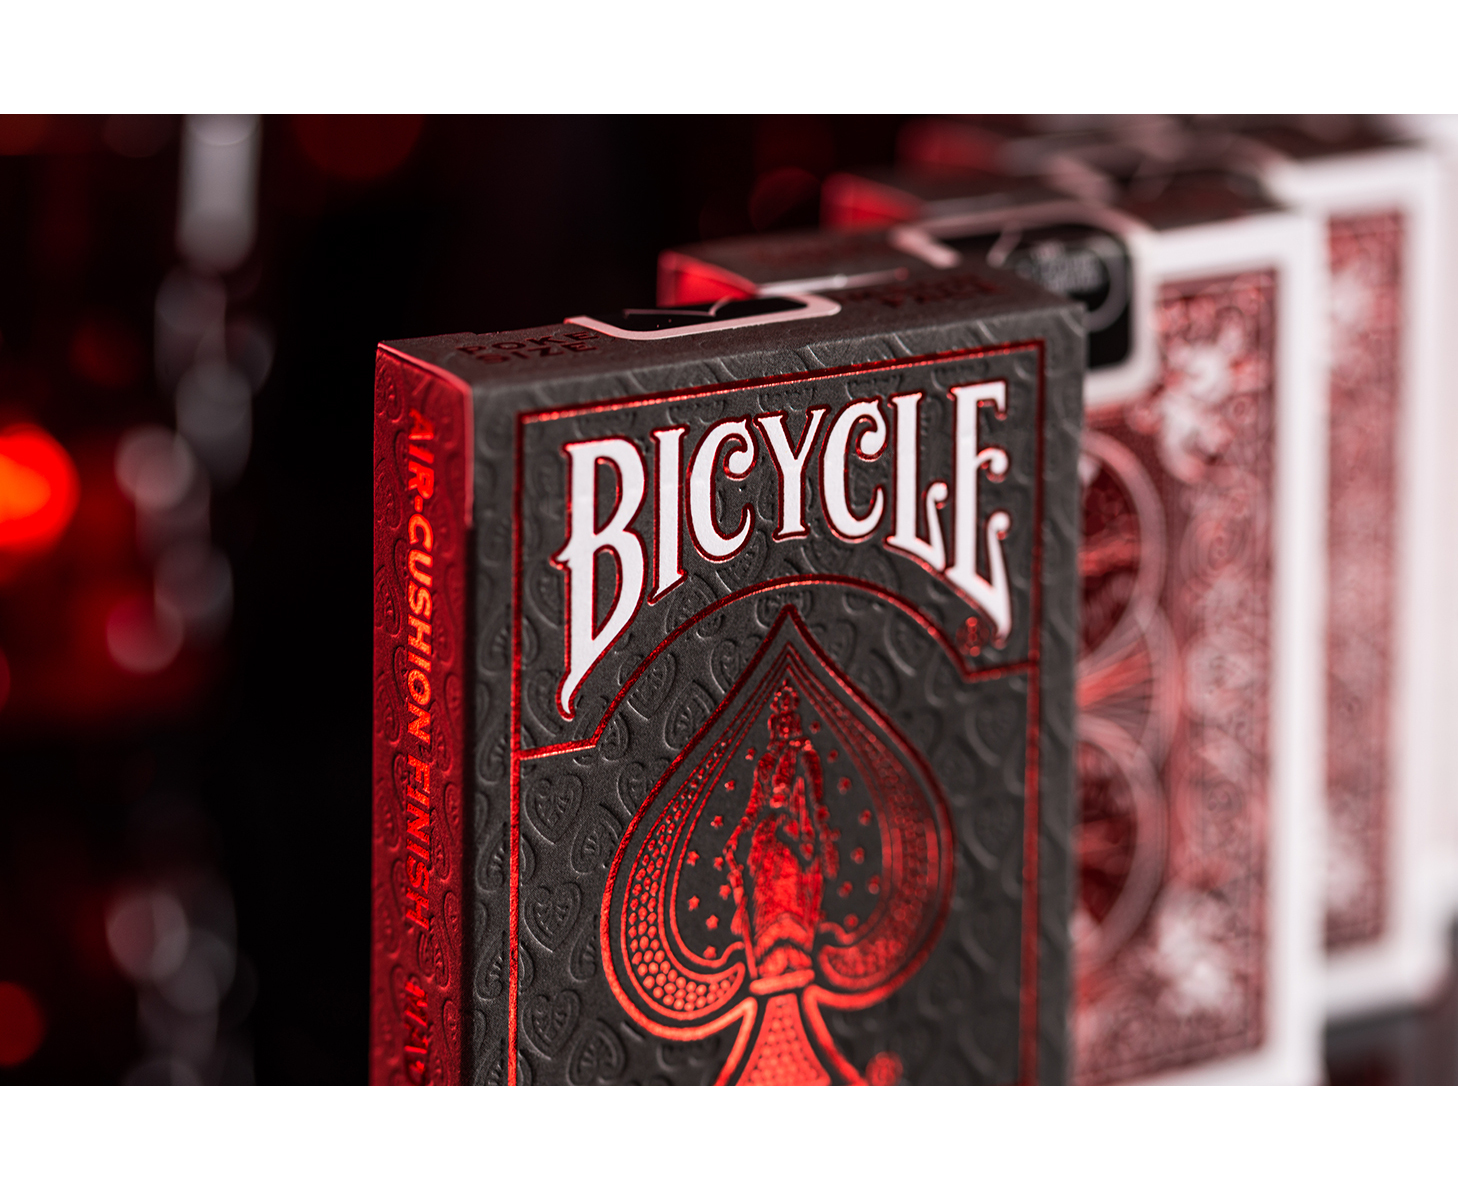 Bicycle ALTENBURGER Kartenspiel Red Crimson Back Foil ASS - Kartendeck